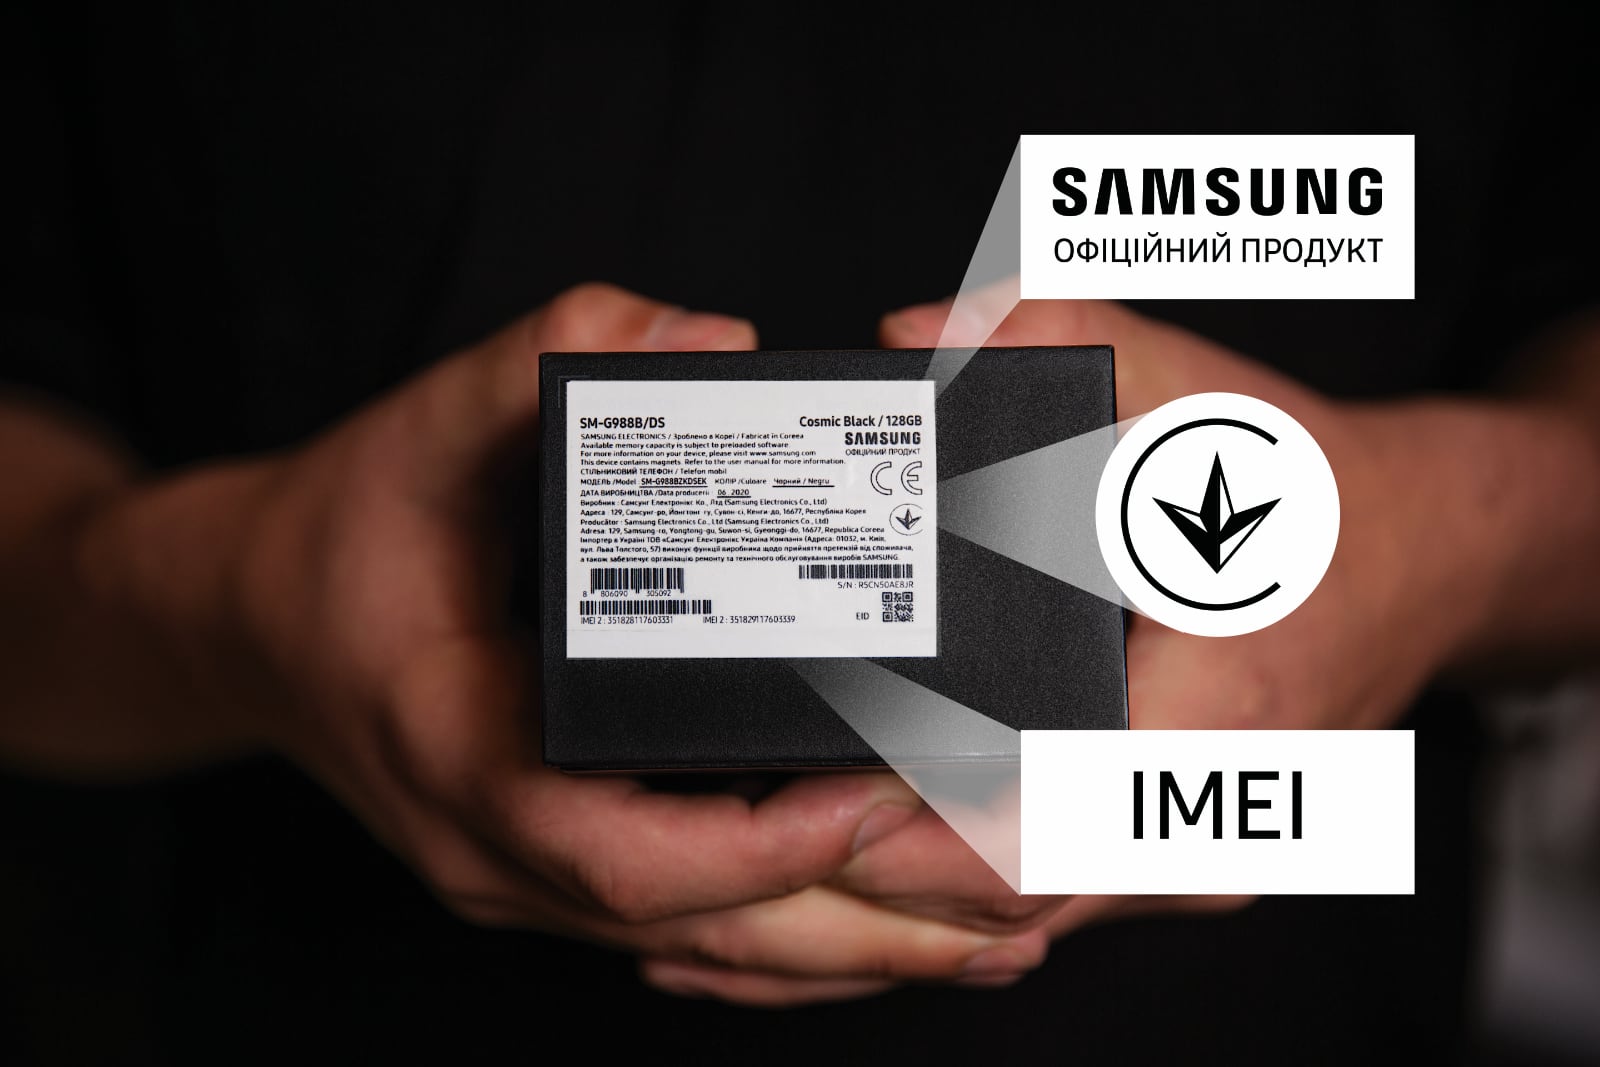 Samsung erinnert Sie an die leicht erkennbare Kennzeichnung seiner Smartphones auf der Verpackung